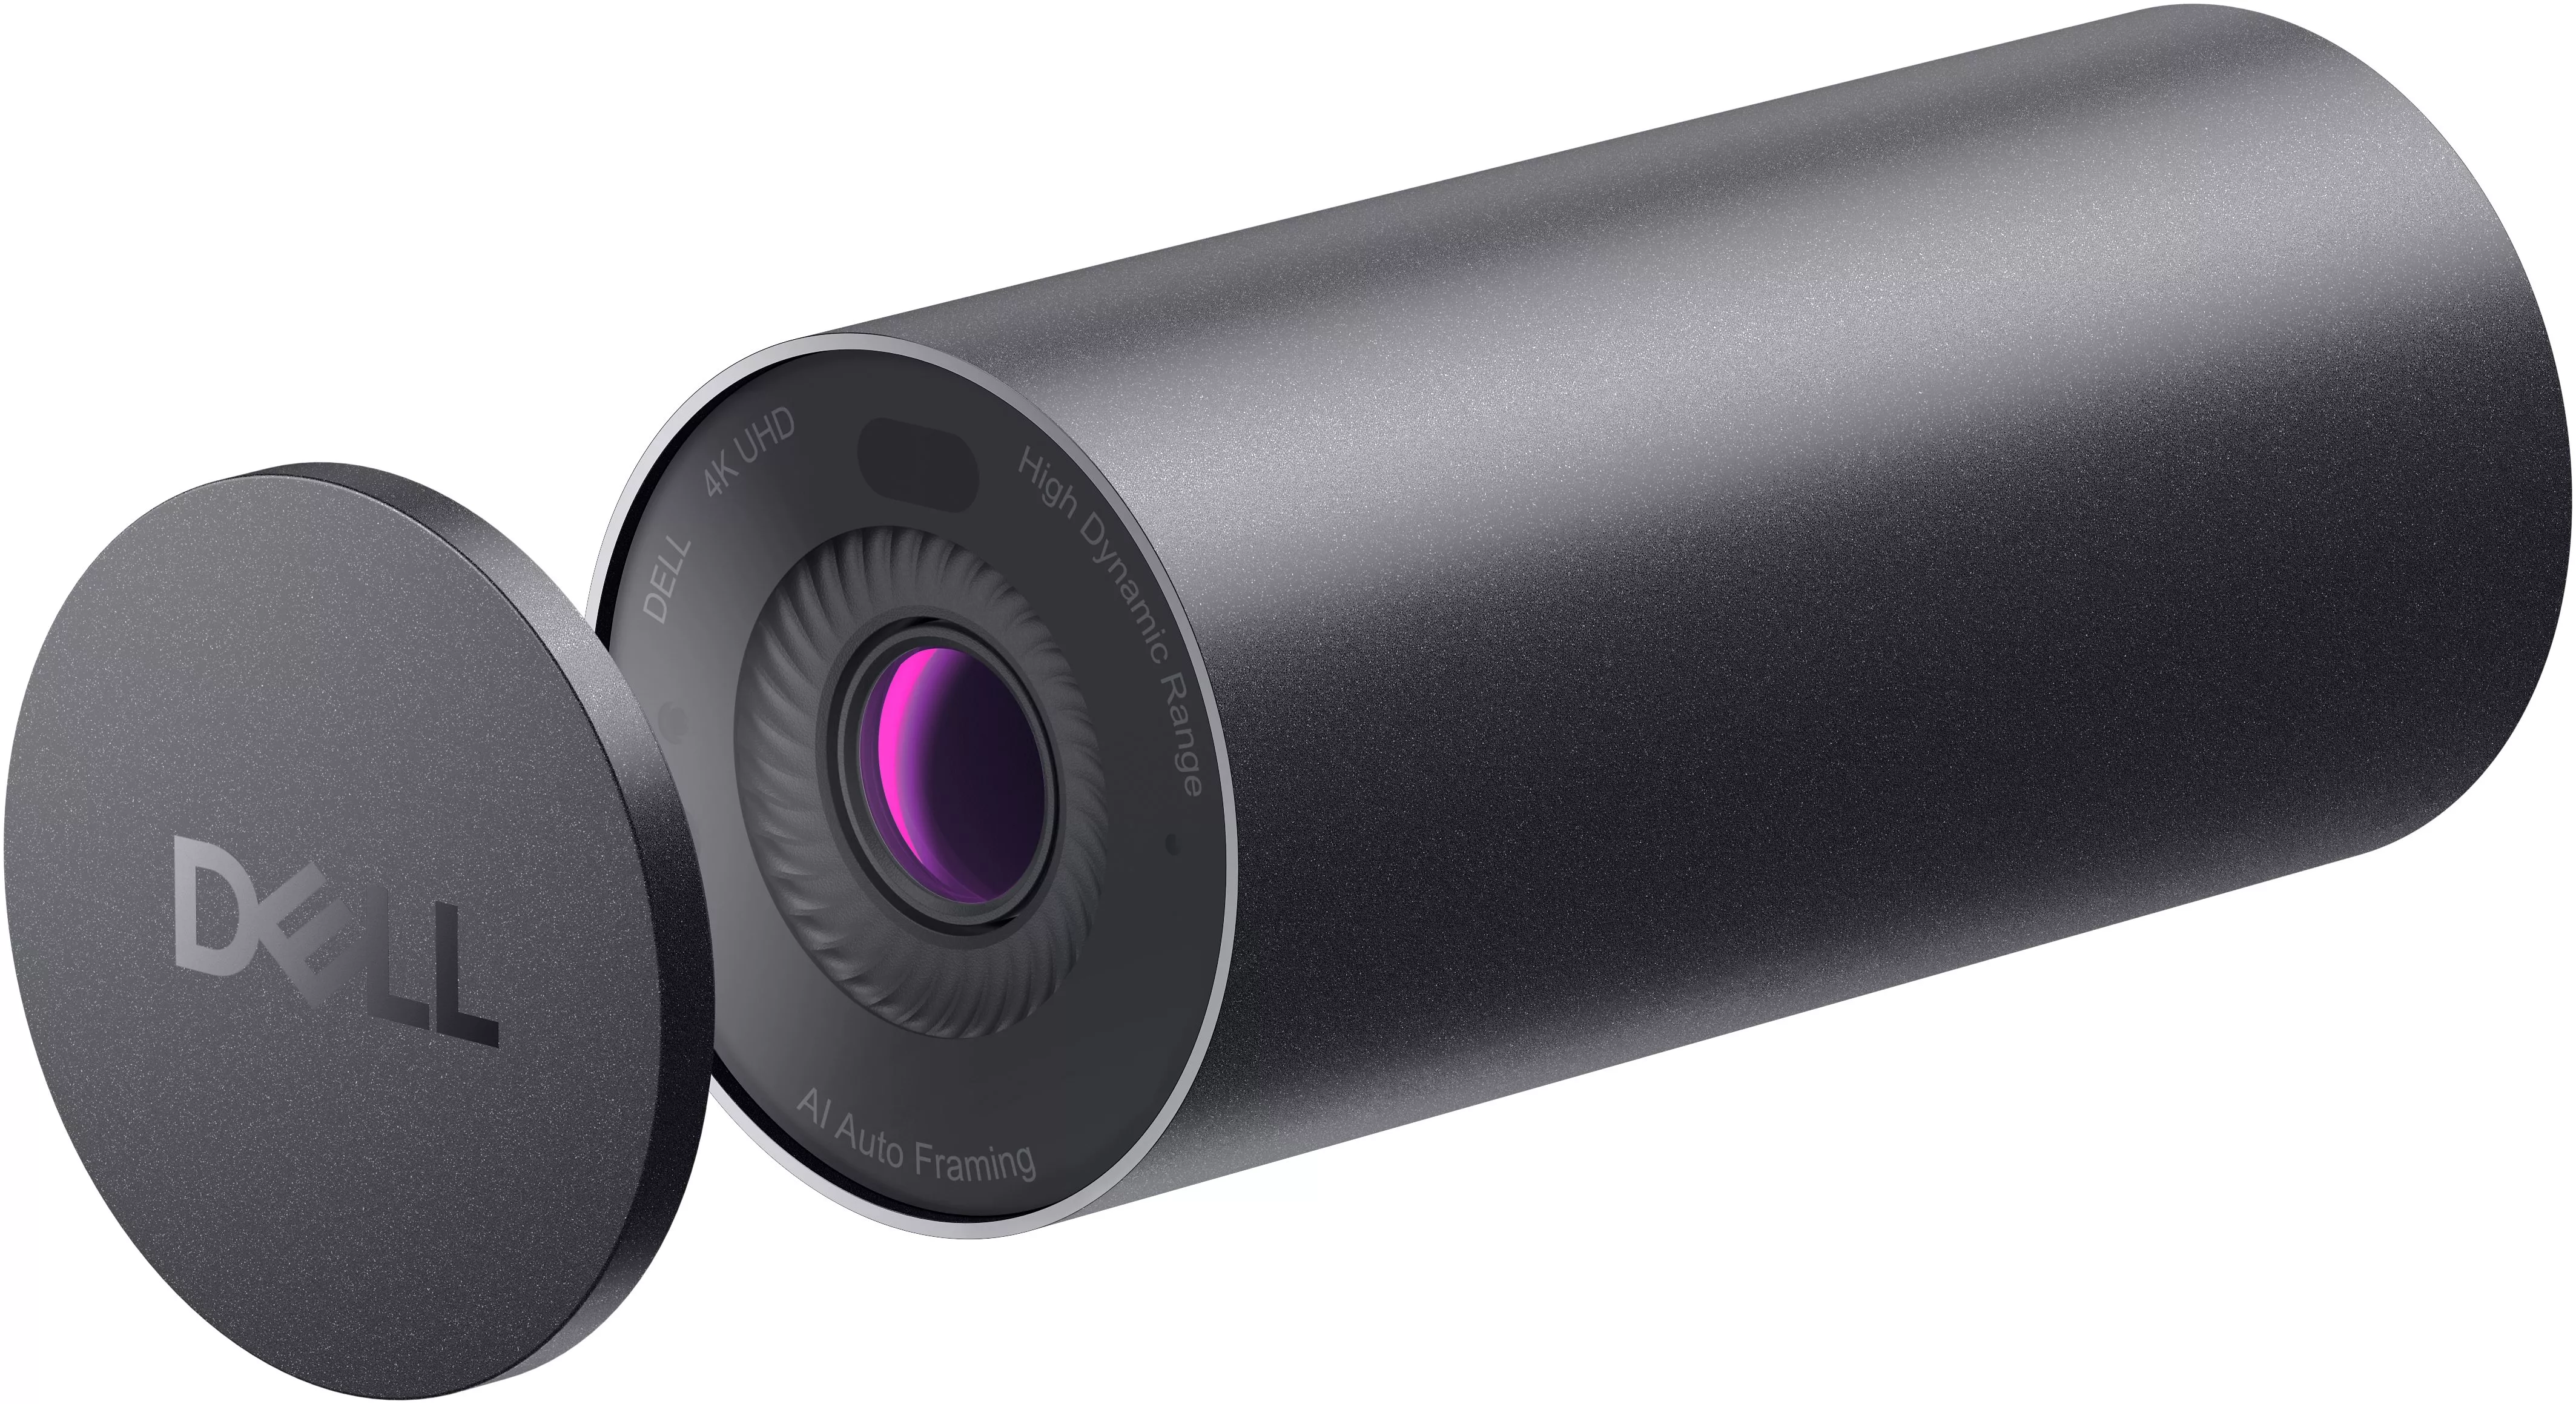 Vente DELL UltraSharp Webcam DELL au meilleur prix - visuel 2